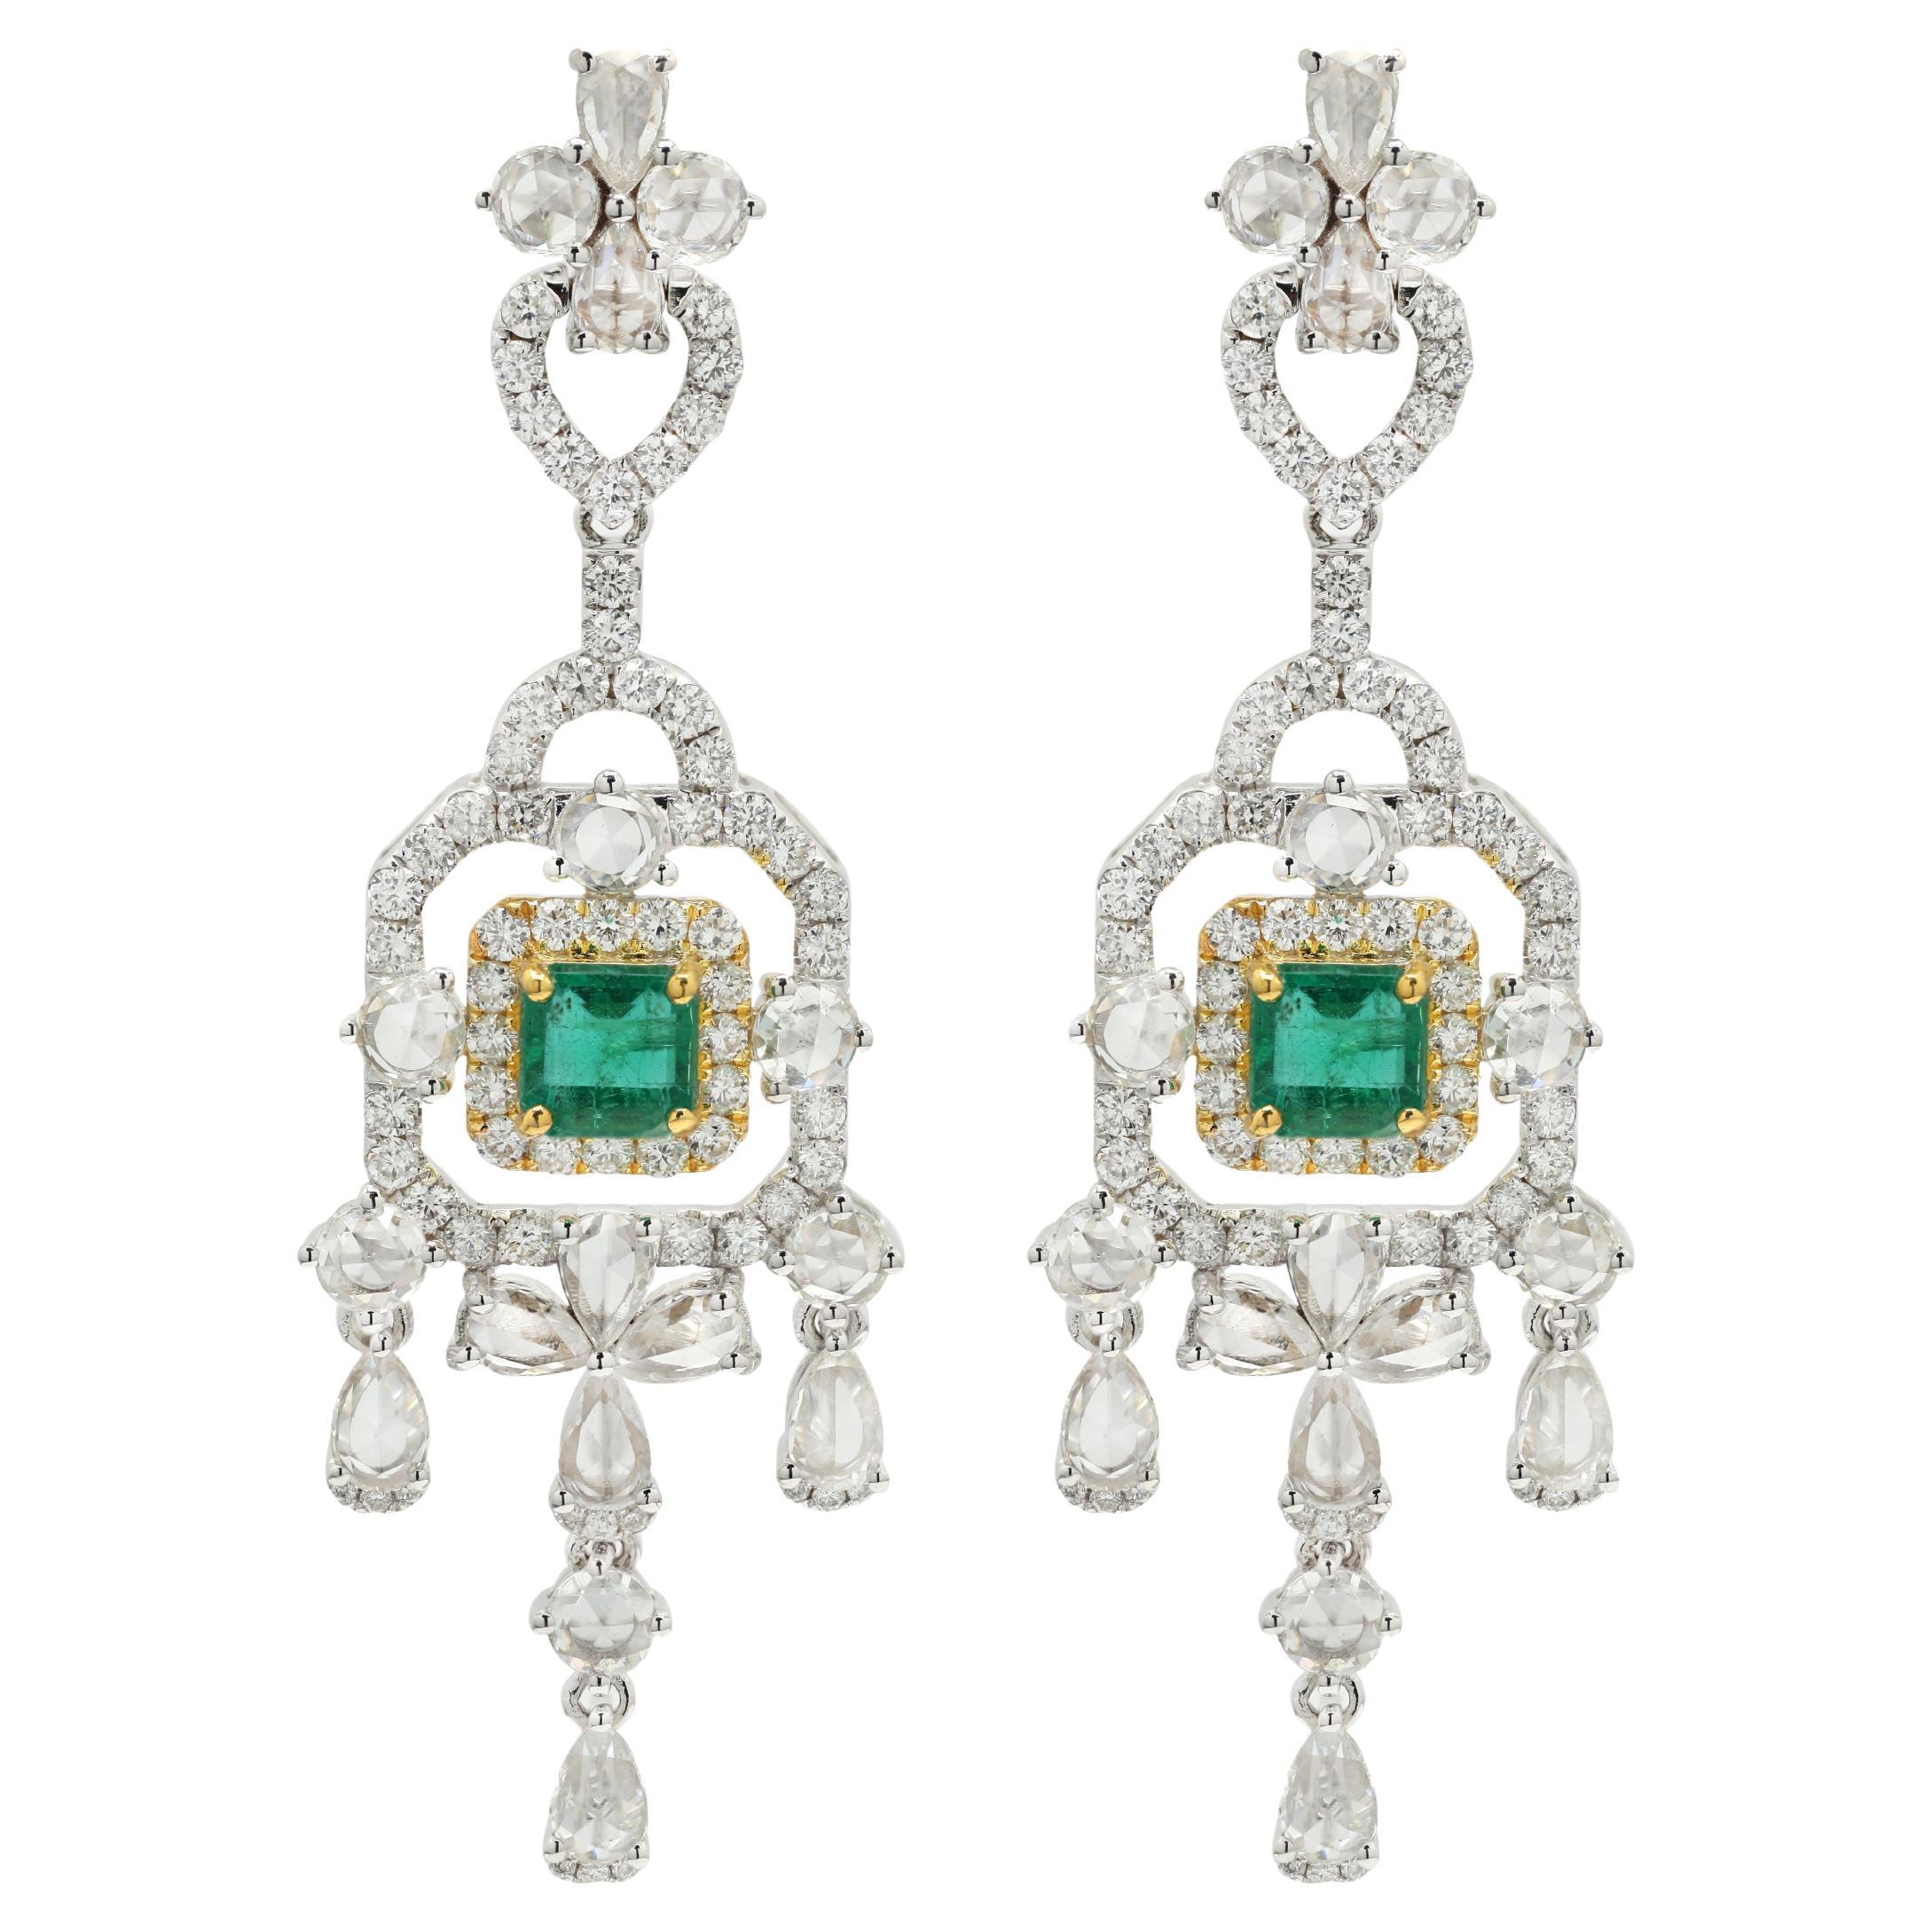 Jugendstil-Kronleuchter-Ohrringe mit Smaragd und Diamant, eingefasst in 14 Karat Weigold